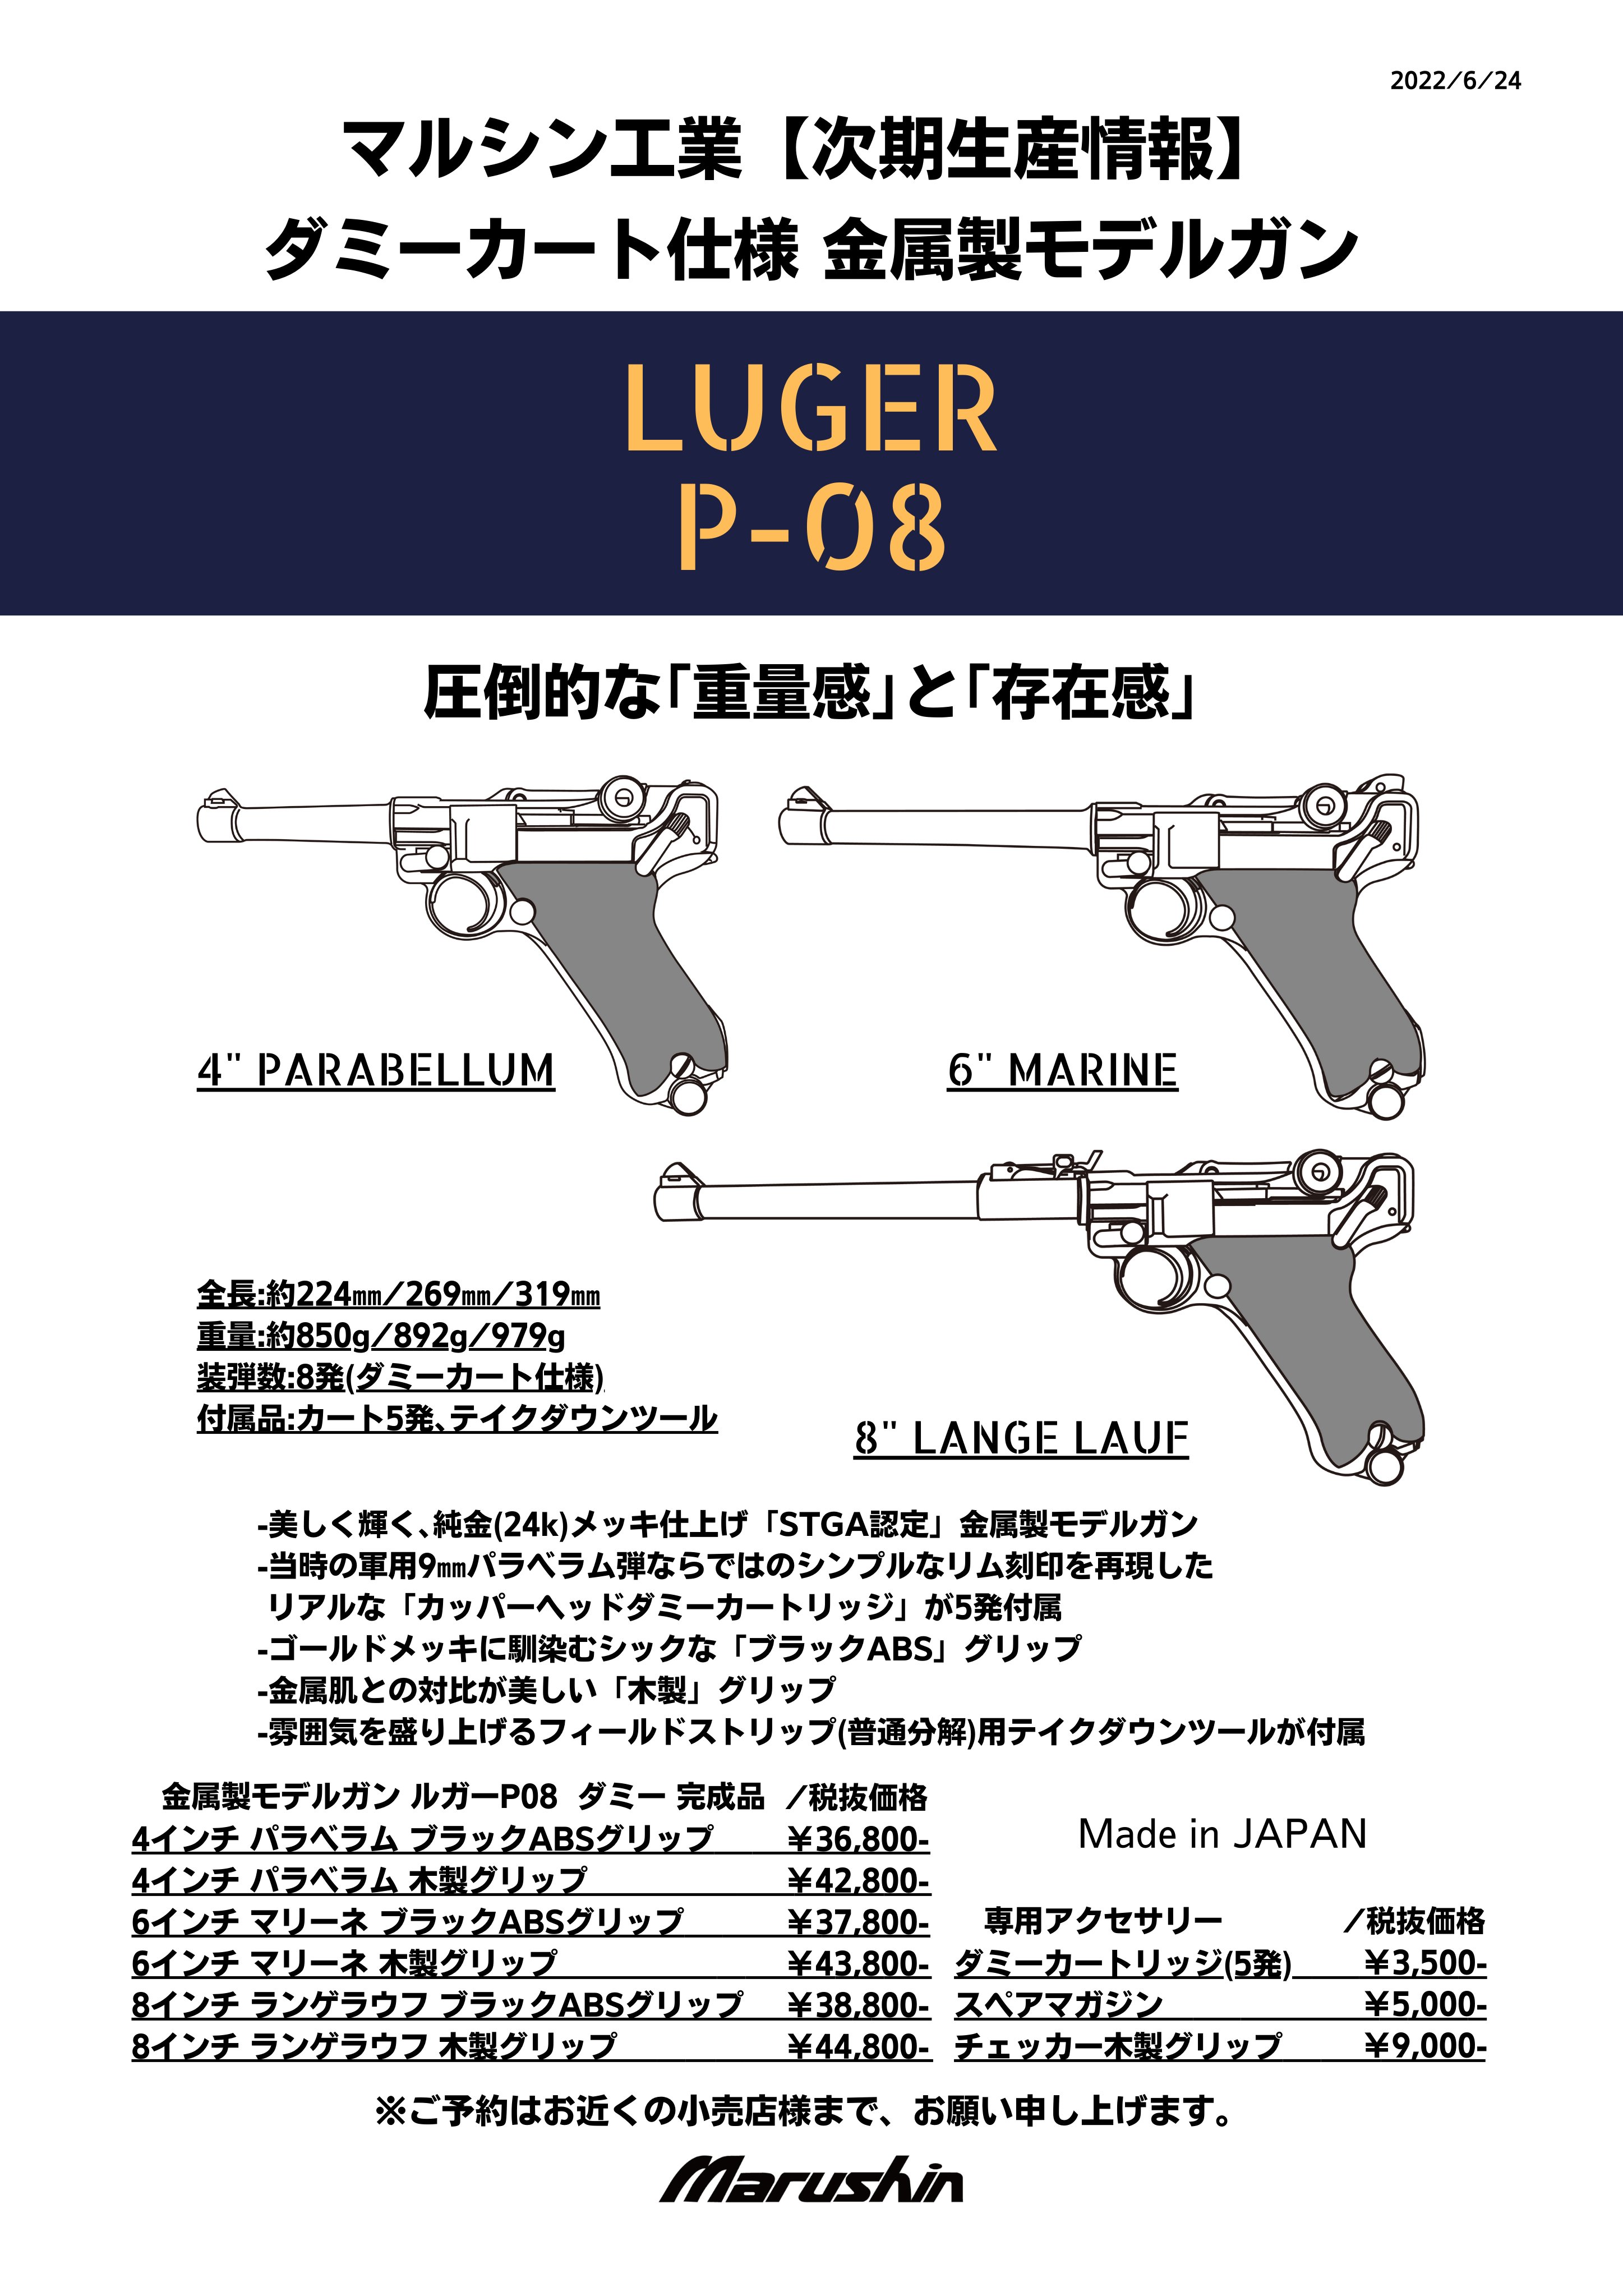 金属製モデルガン LUGER P-08 6′MARINE ブラックABSグリップ タムタムオンラインショップ札幌店 通販 ミリタリー